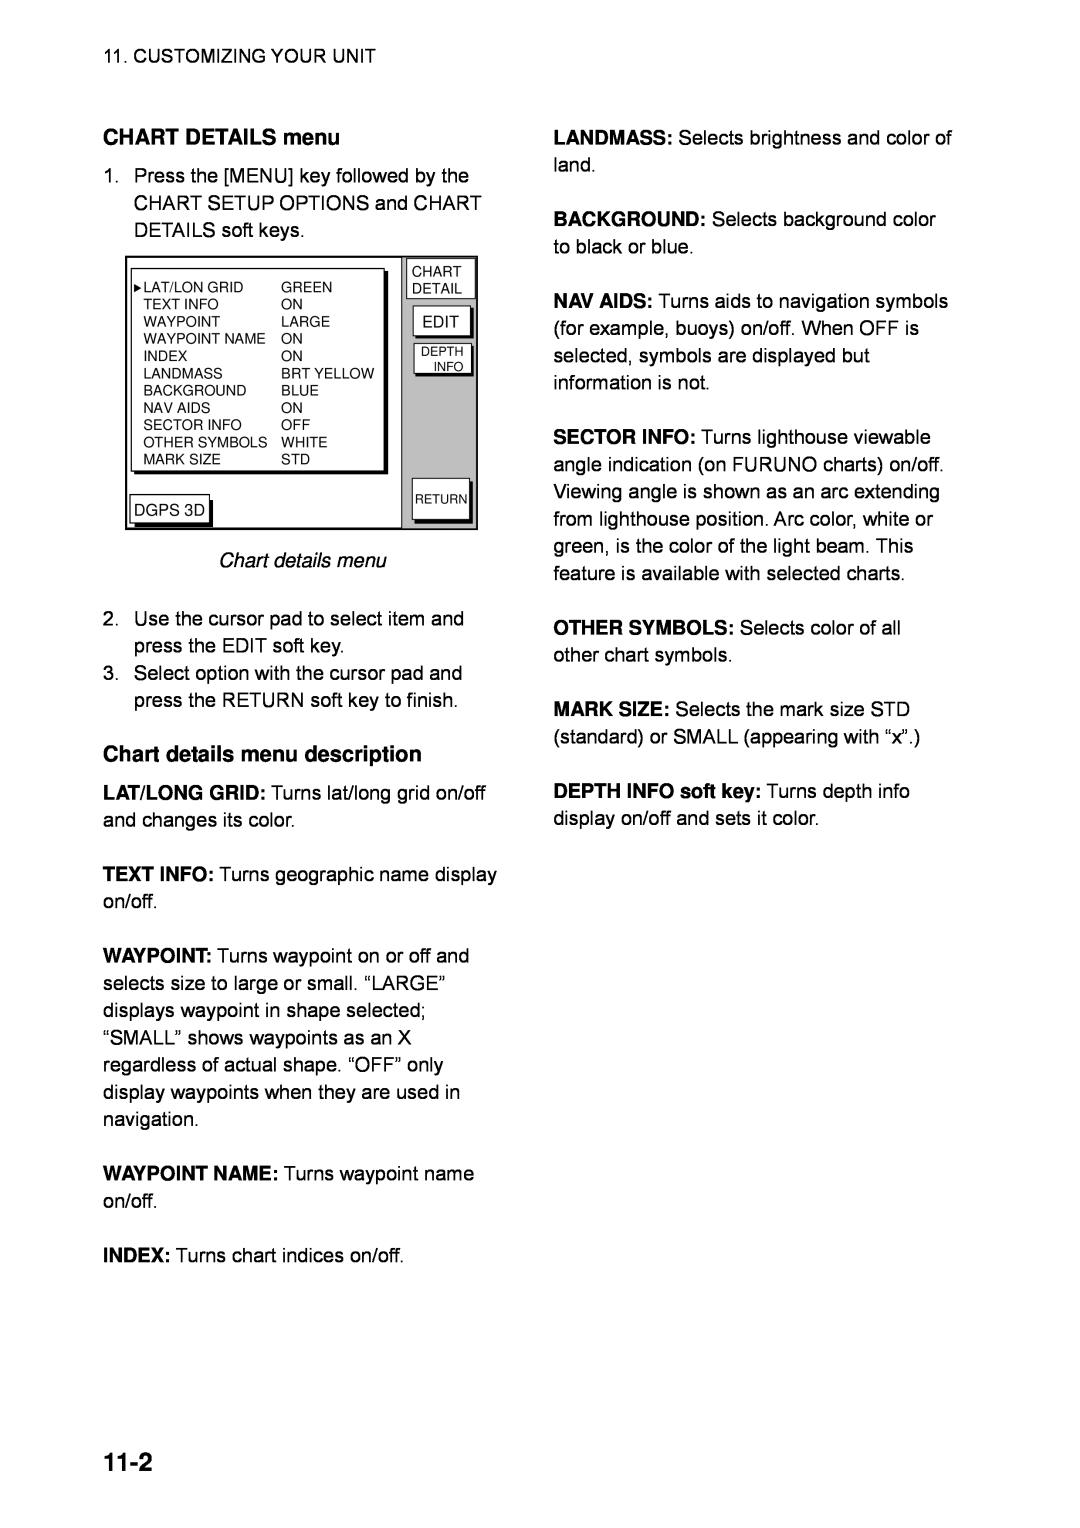 Furuno GP-1850WDF, GP-1850WF manual 11-2, CHART DETAILS menu, Chart details menu description 